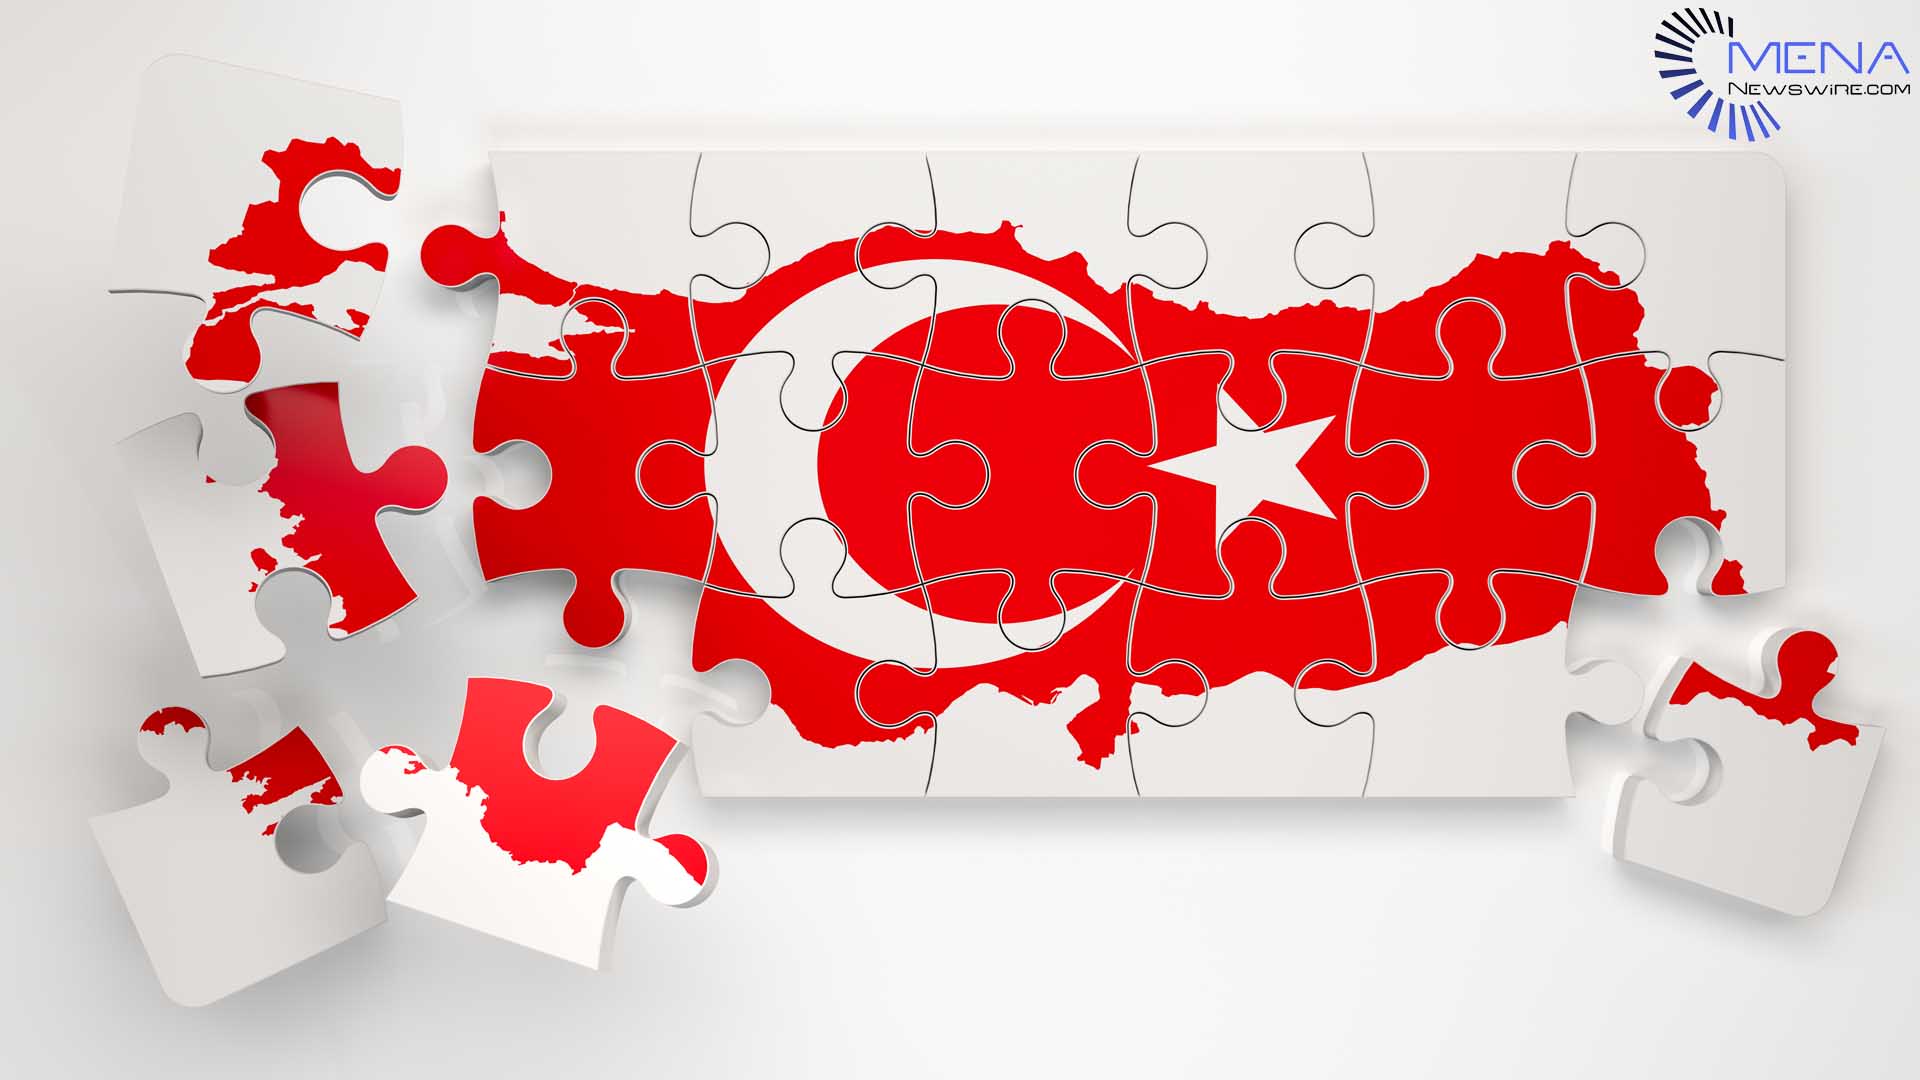 MENA Newswire, Türk haber dağıtımıyla bir ilke imza atıyor